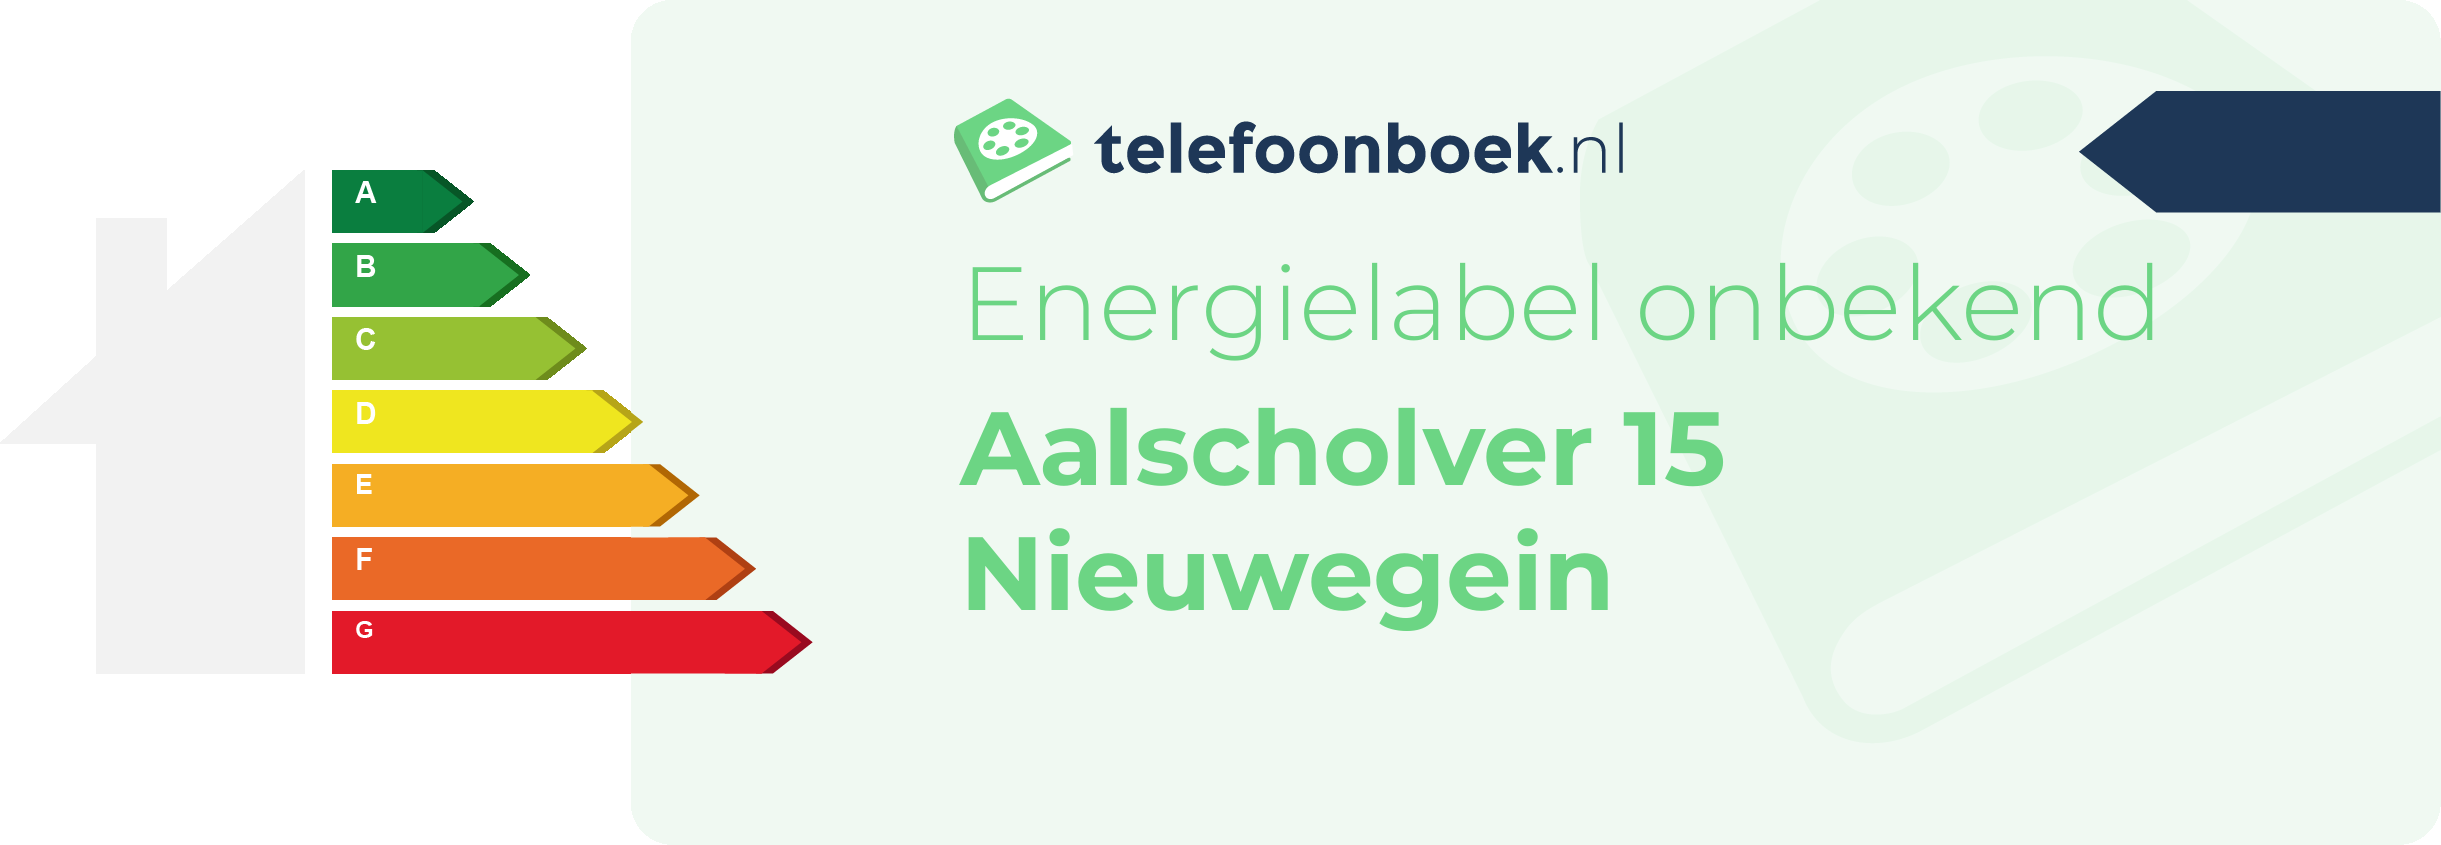 Energielabel Aalscholver 15 Nieuwegein